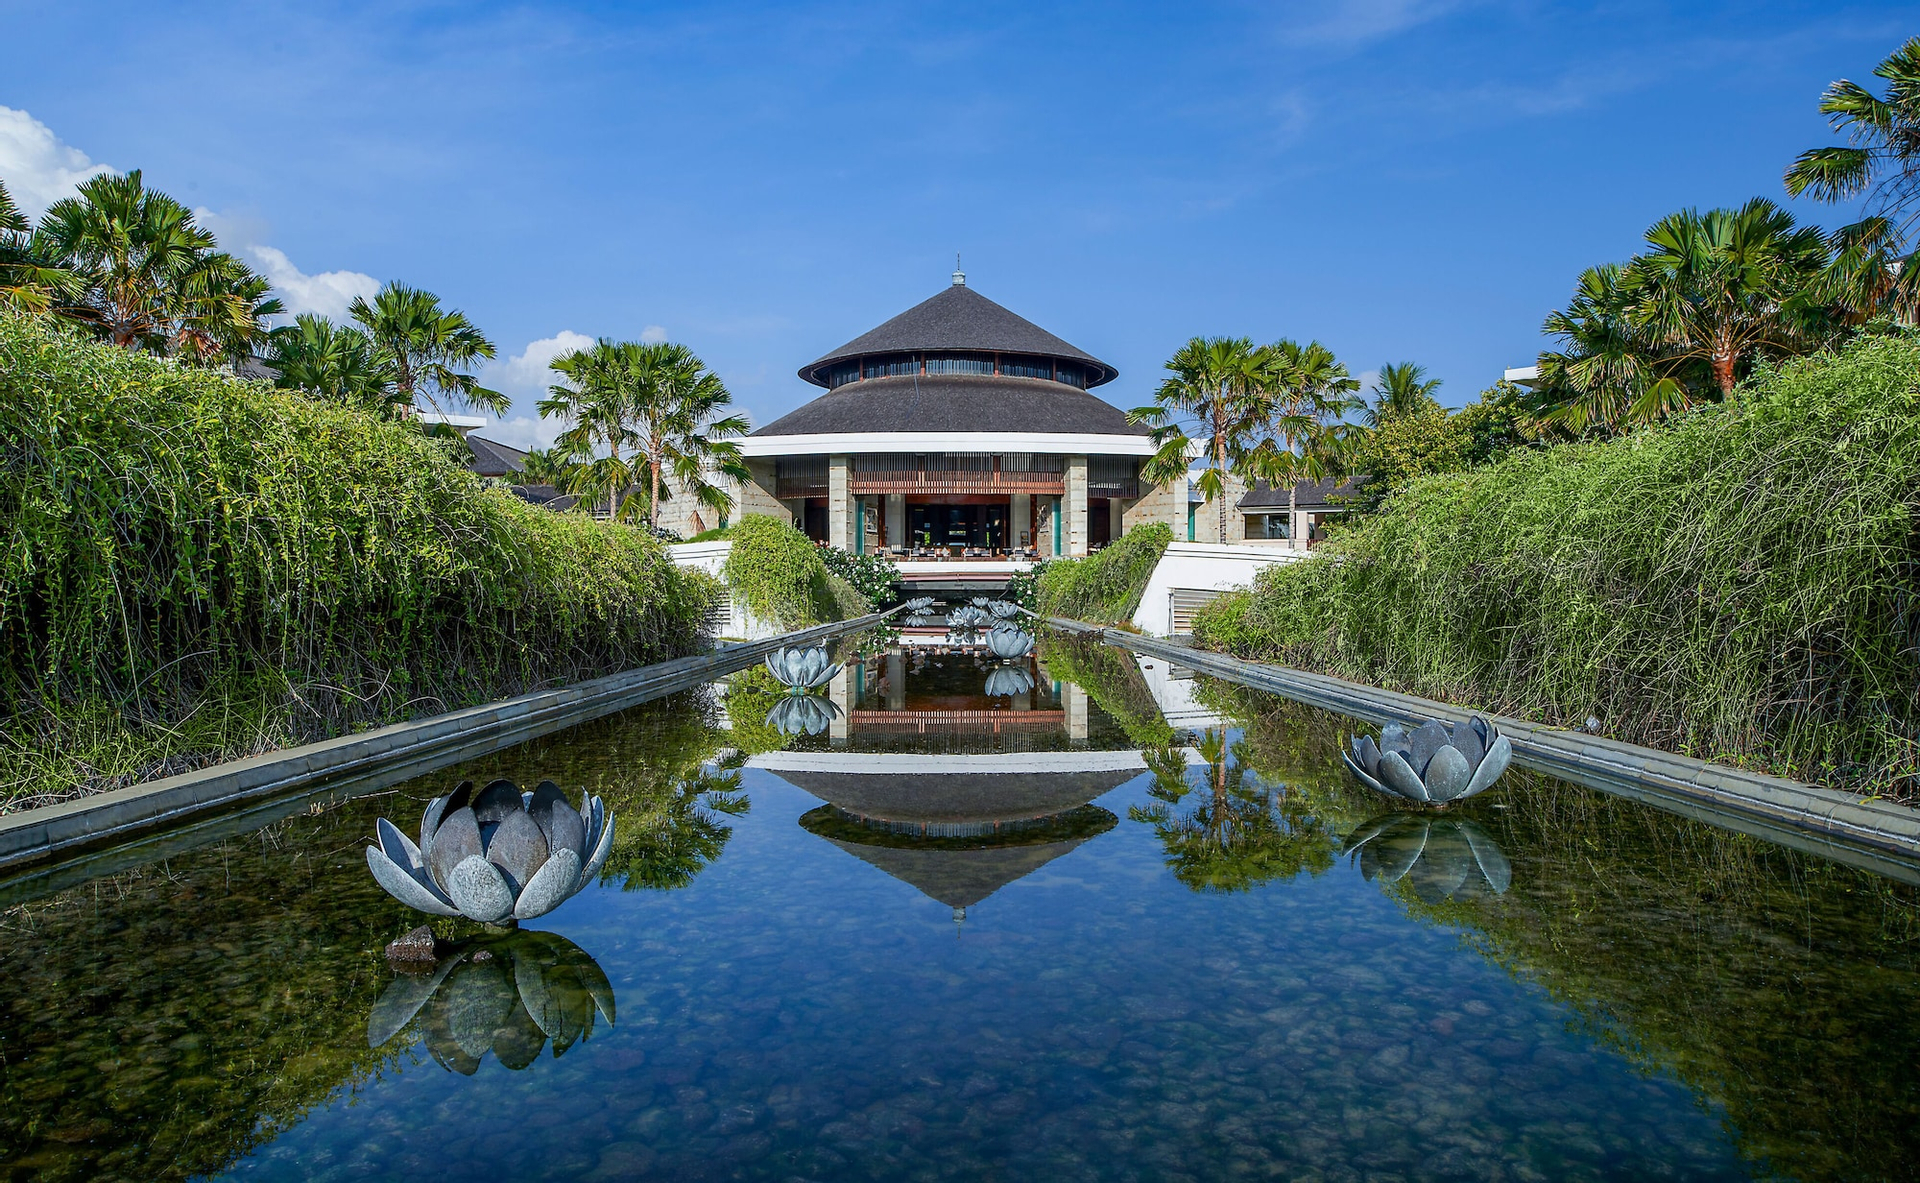 Suite and Villas at Sofitel Bali, Badung